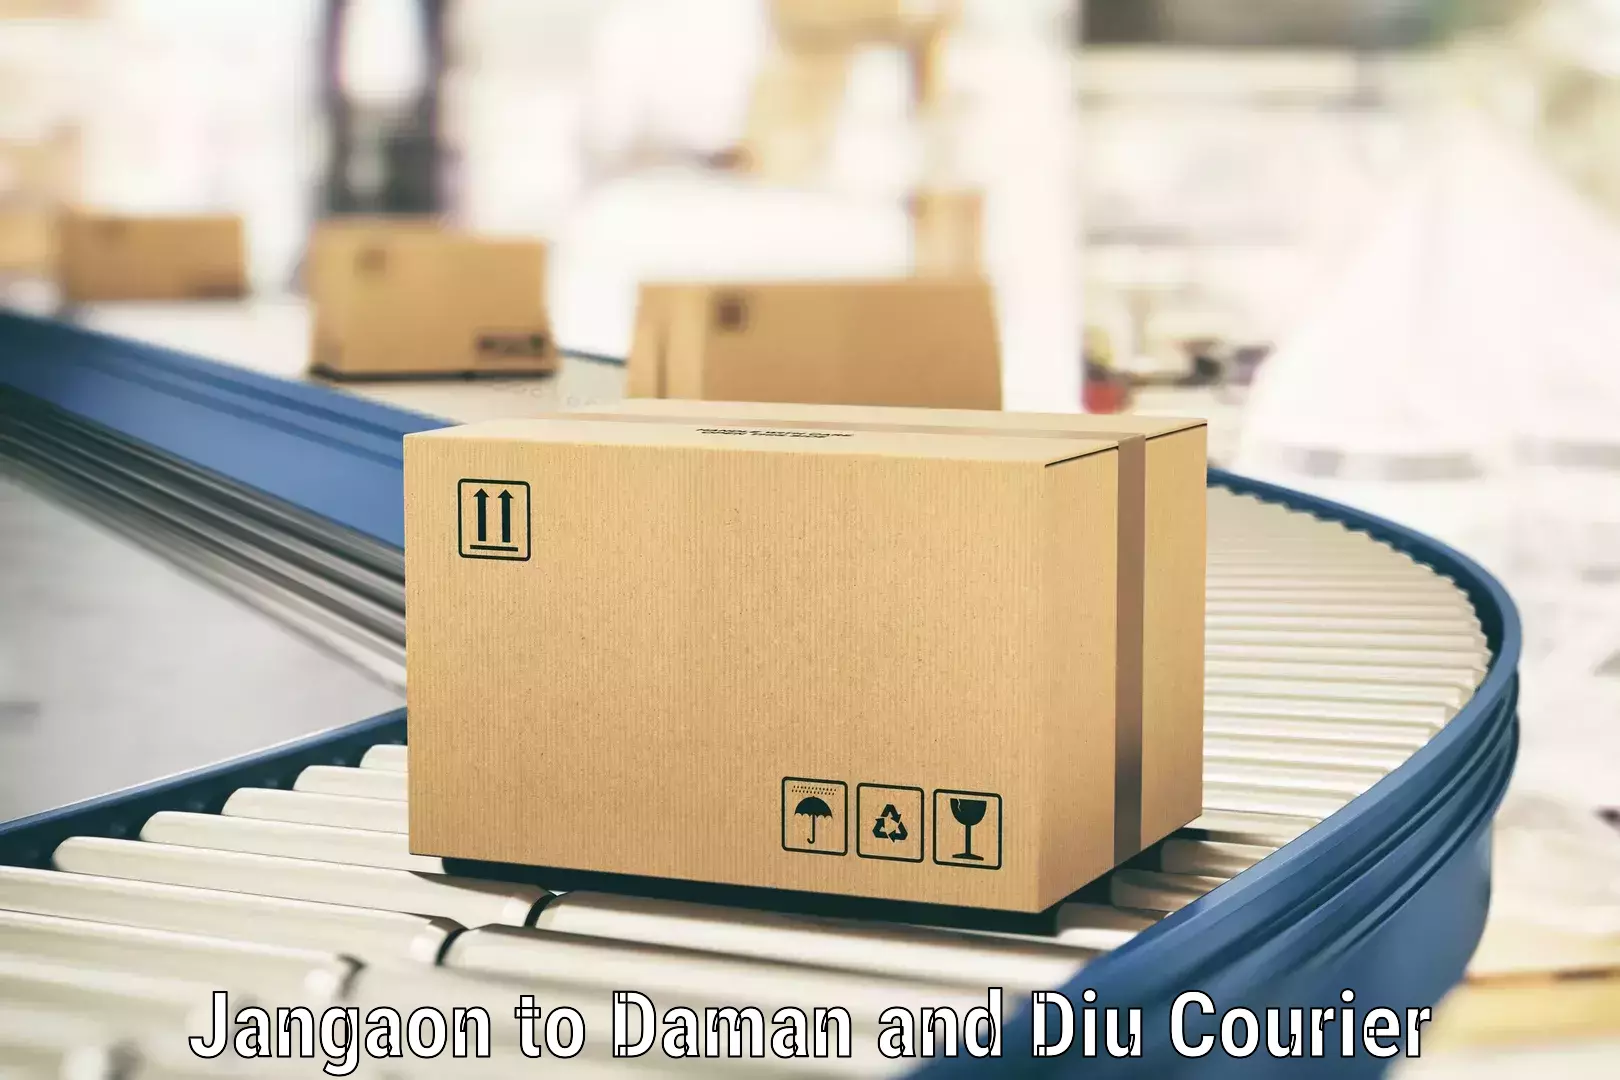 Efficient cargo handling Jangaon to Daman and Diu